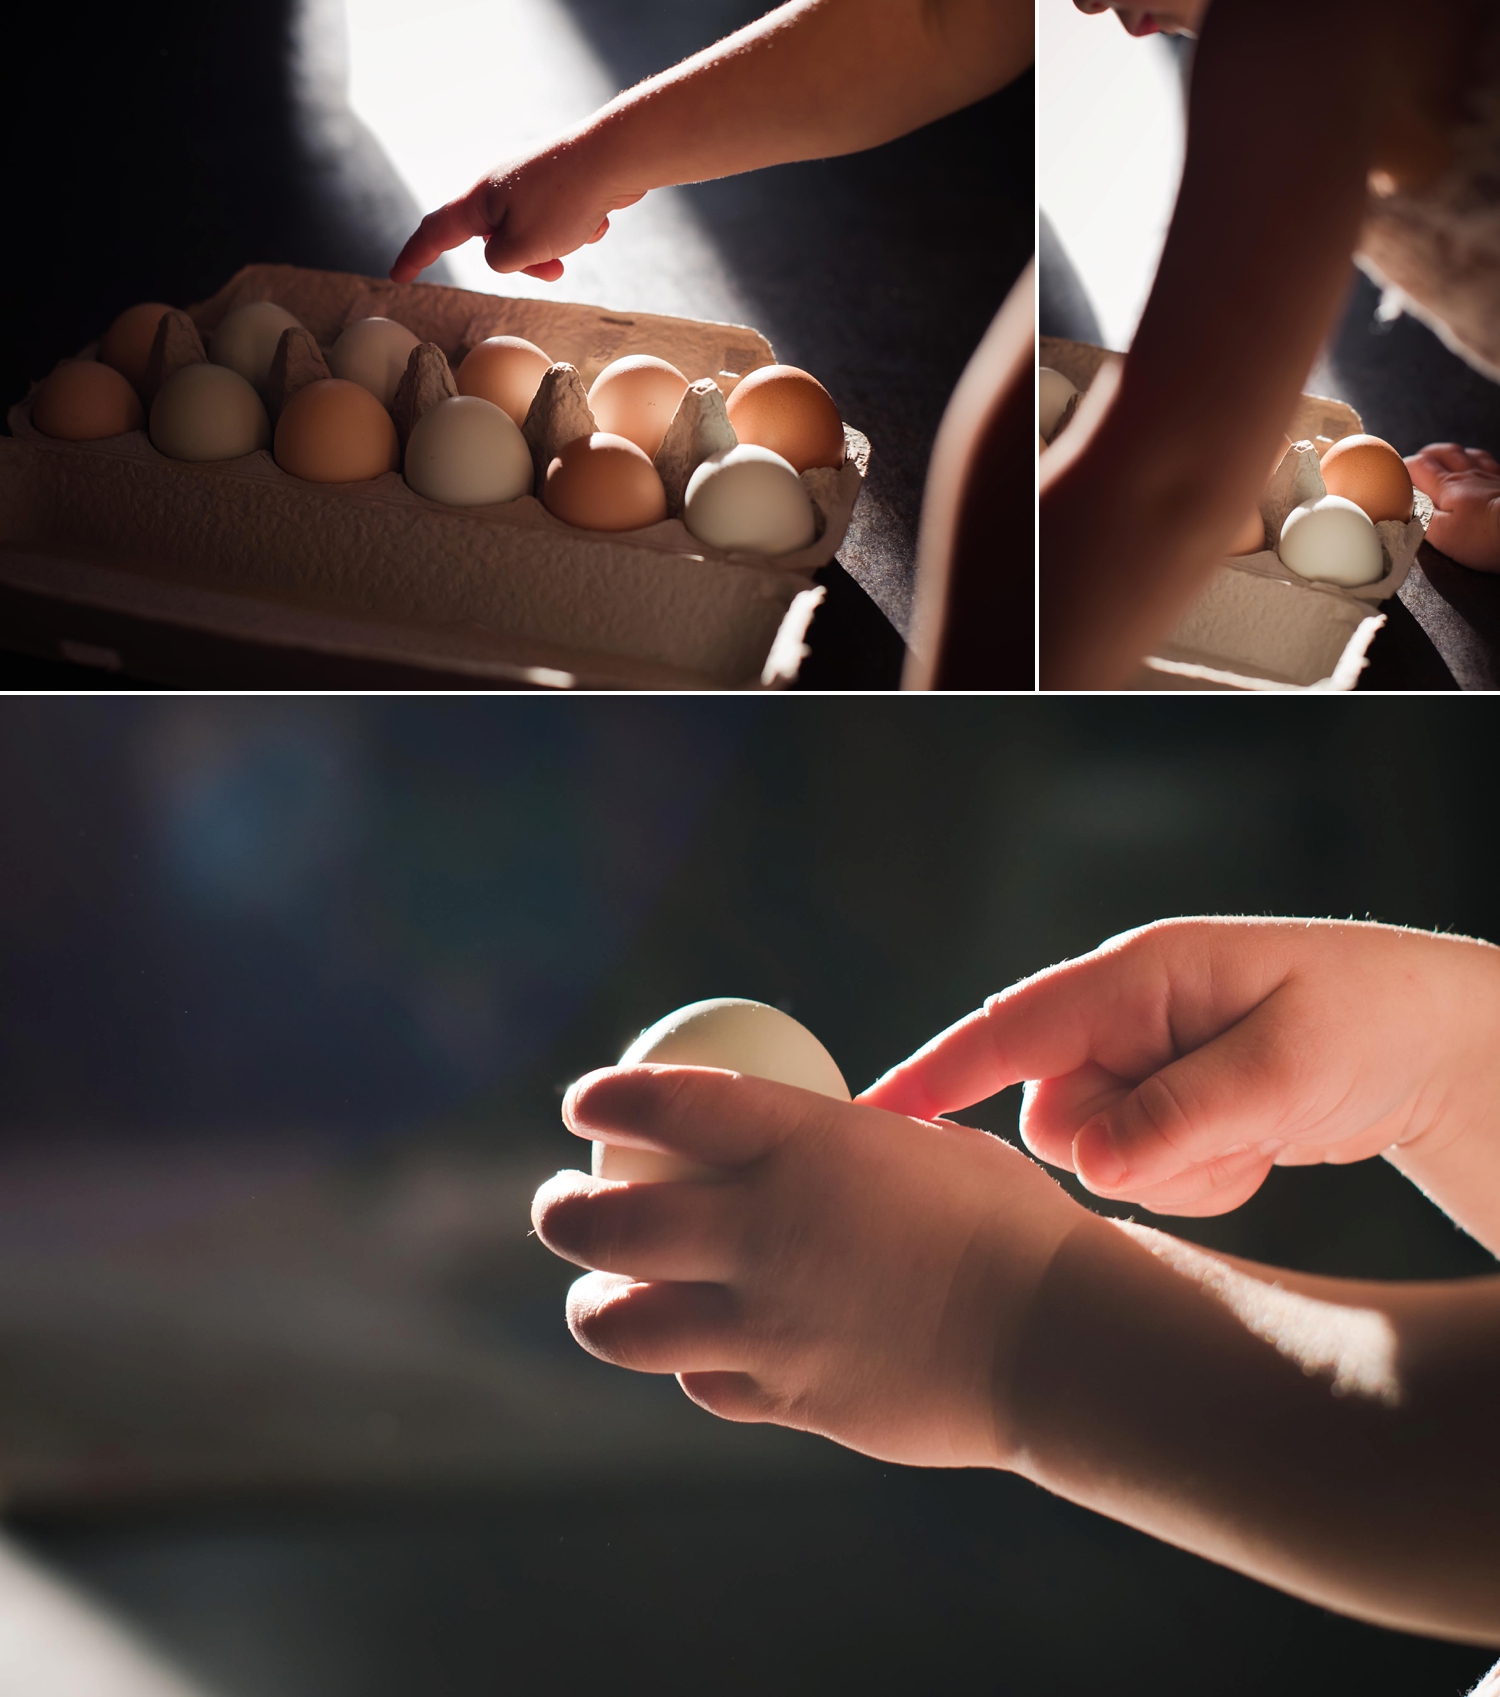 eggs_0001.jpg